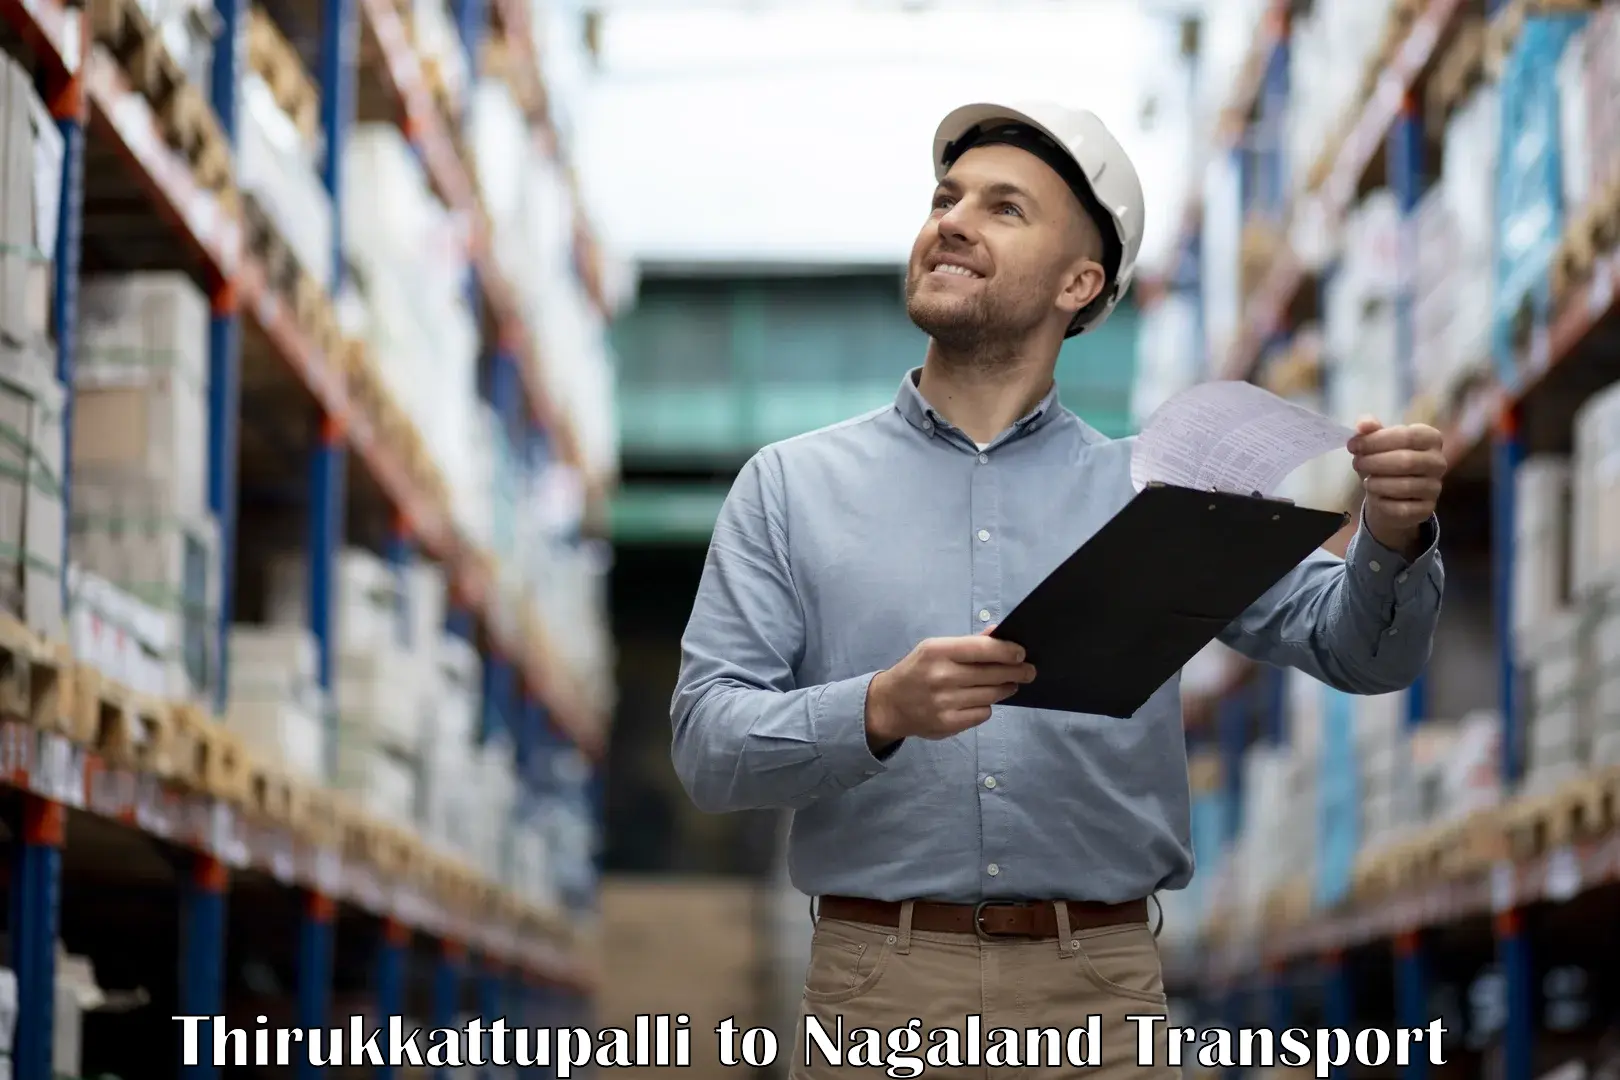 Nearest transport service Thirukkattupalli to Dimapur